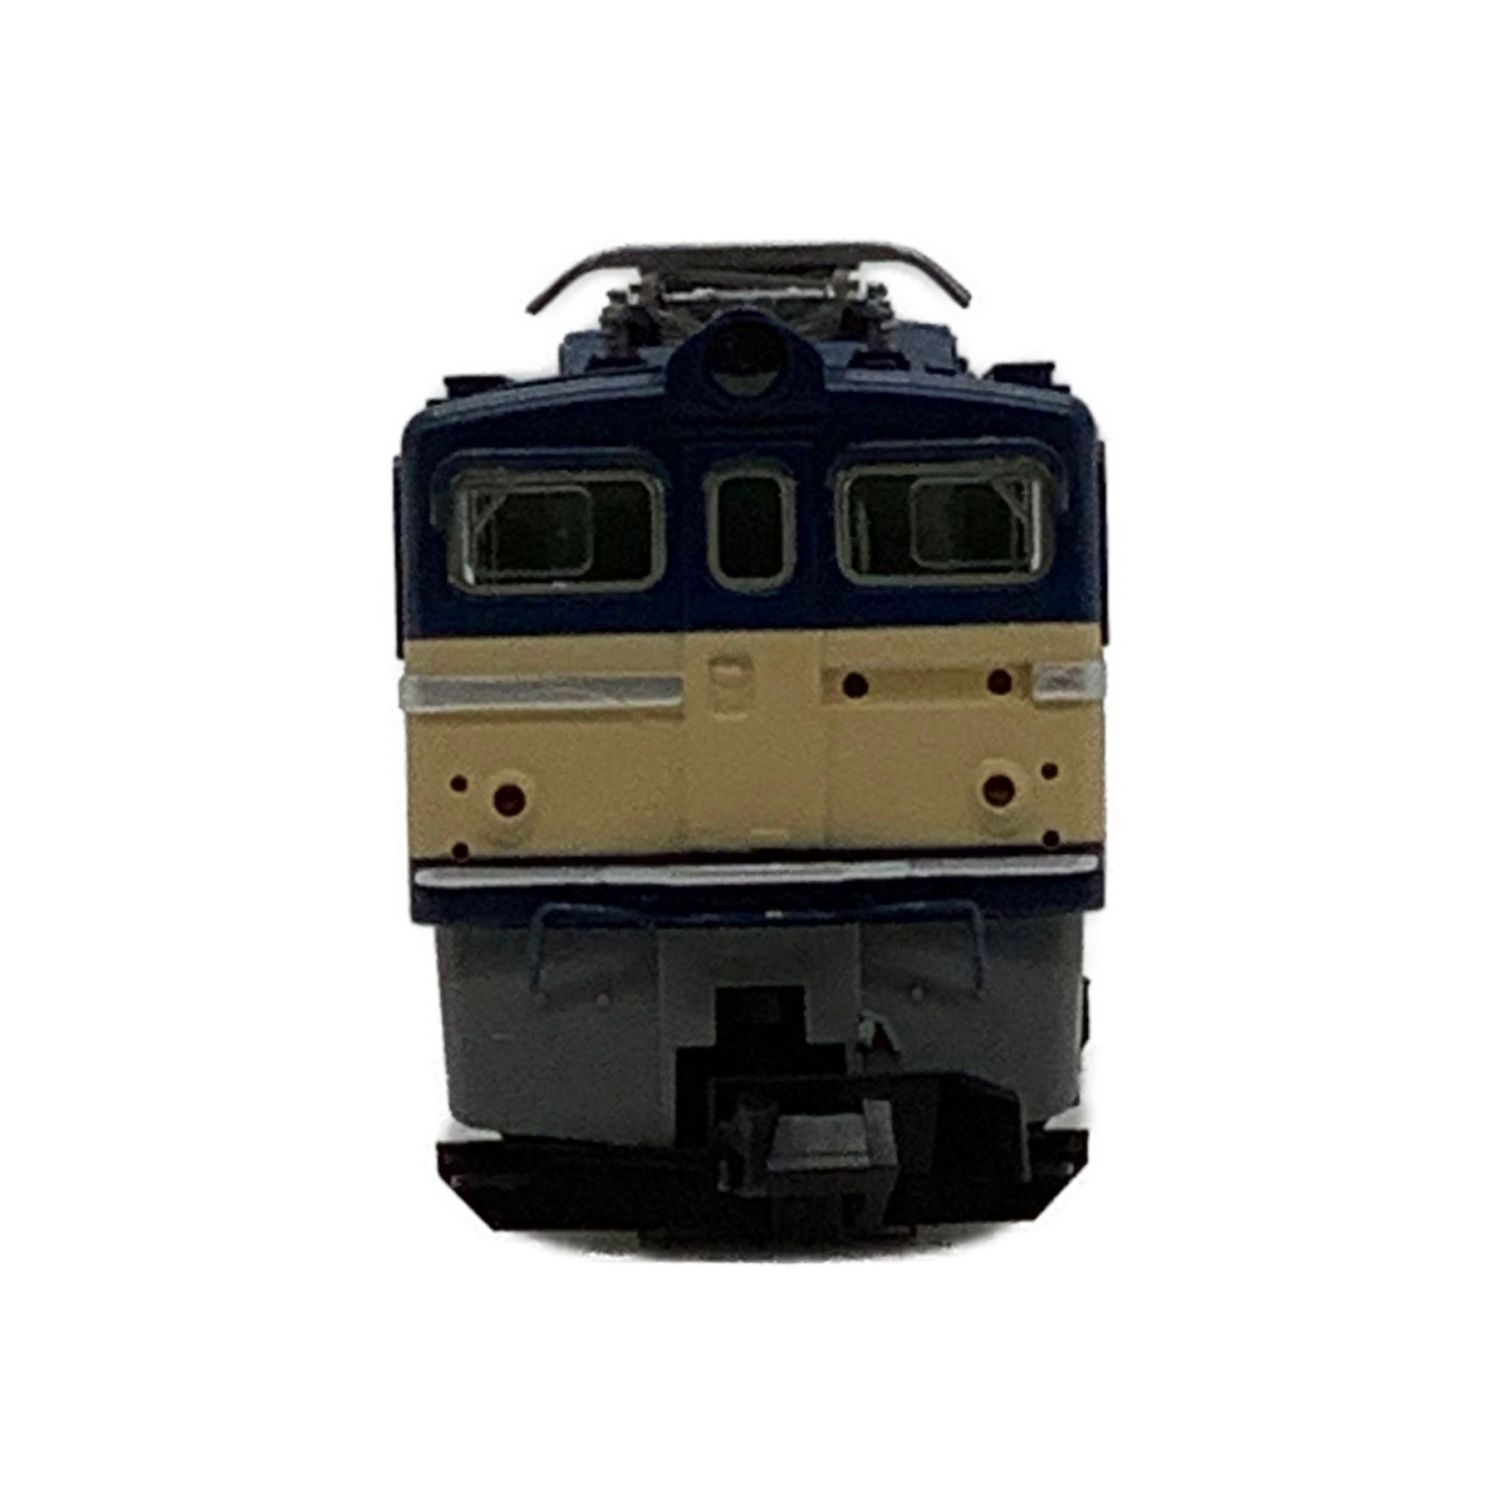 9115 国鉄 ED62形 電気機関車(動力付き) Nゲージ 鉄道模型 TOMIX(トミックス)